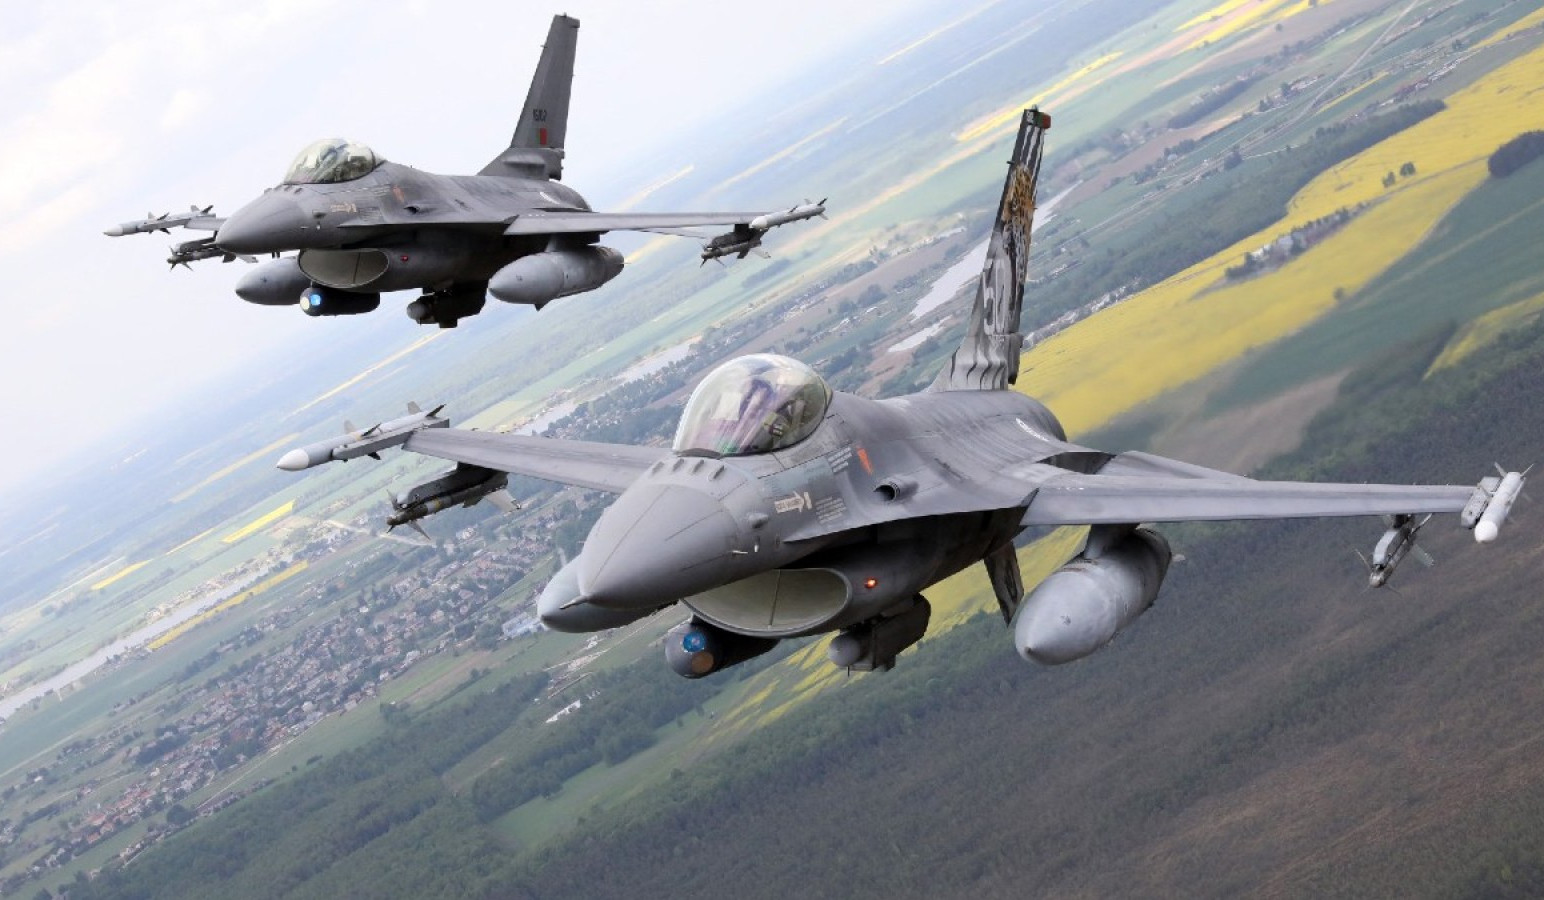 Բելգիան մինչև այս տարվա վերջ կարող է մի քանի F-16 տրամադրել Կիևին